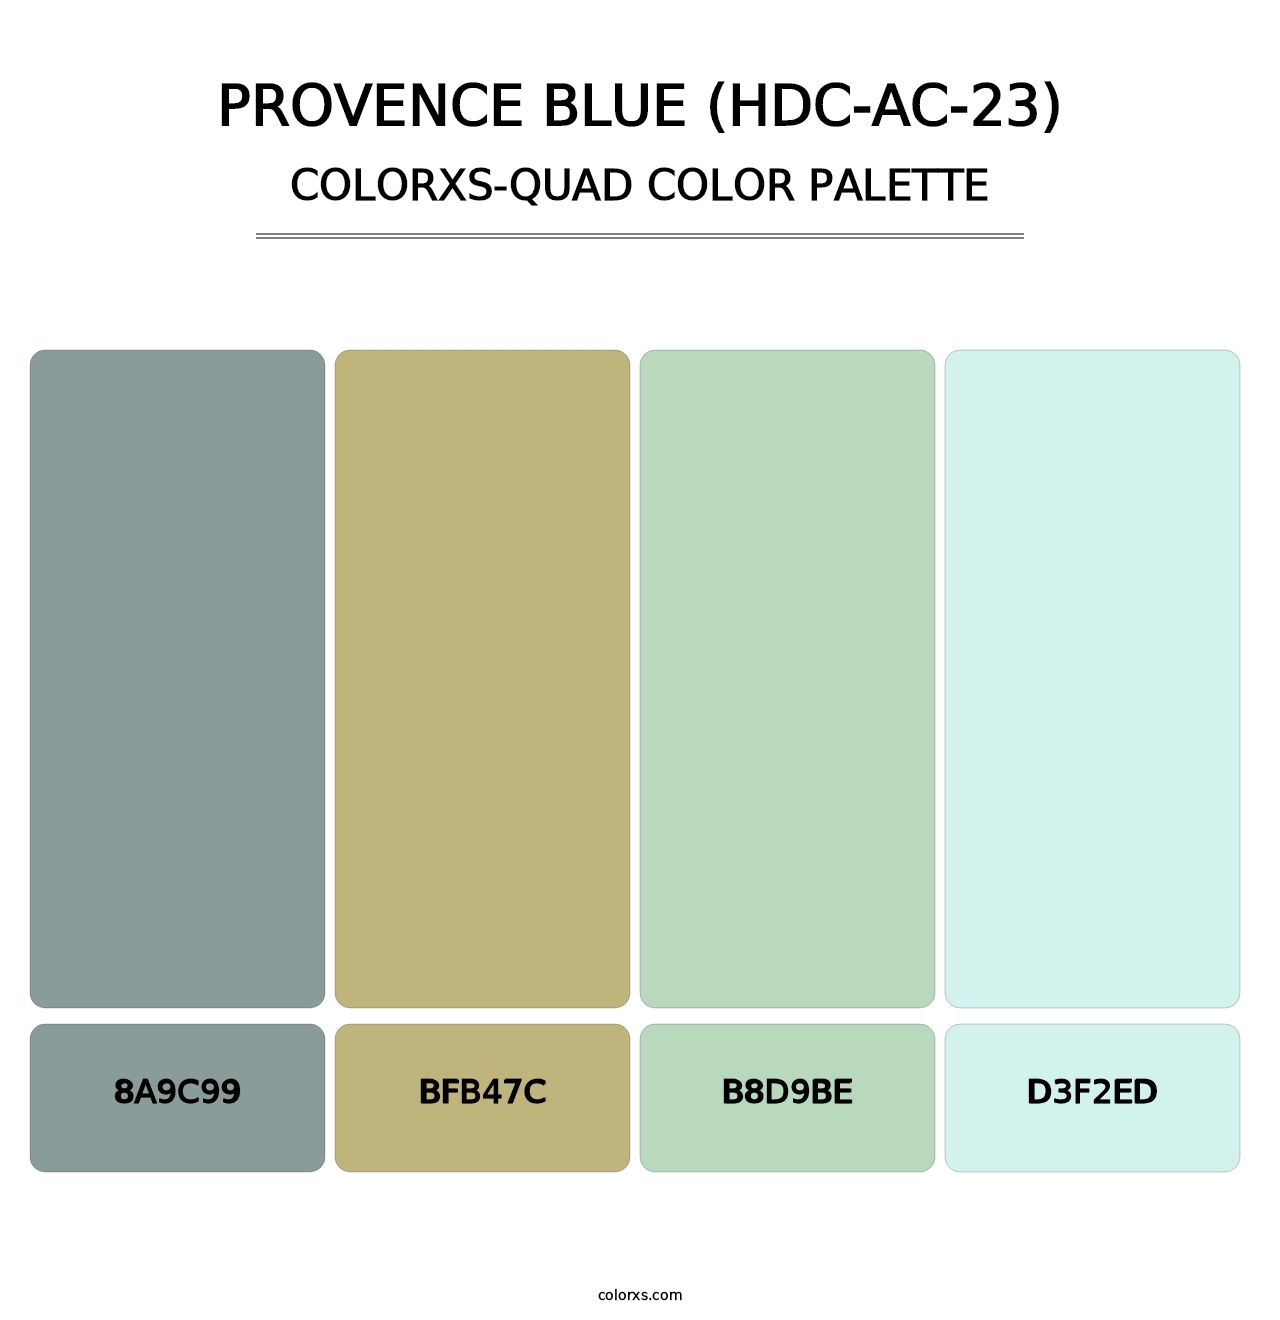 Provence Blue (HDC-AC-23) - Colorxs Quad Palette